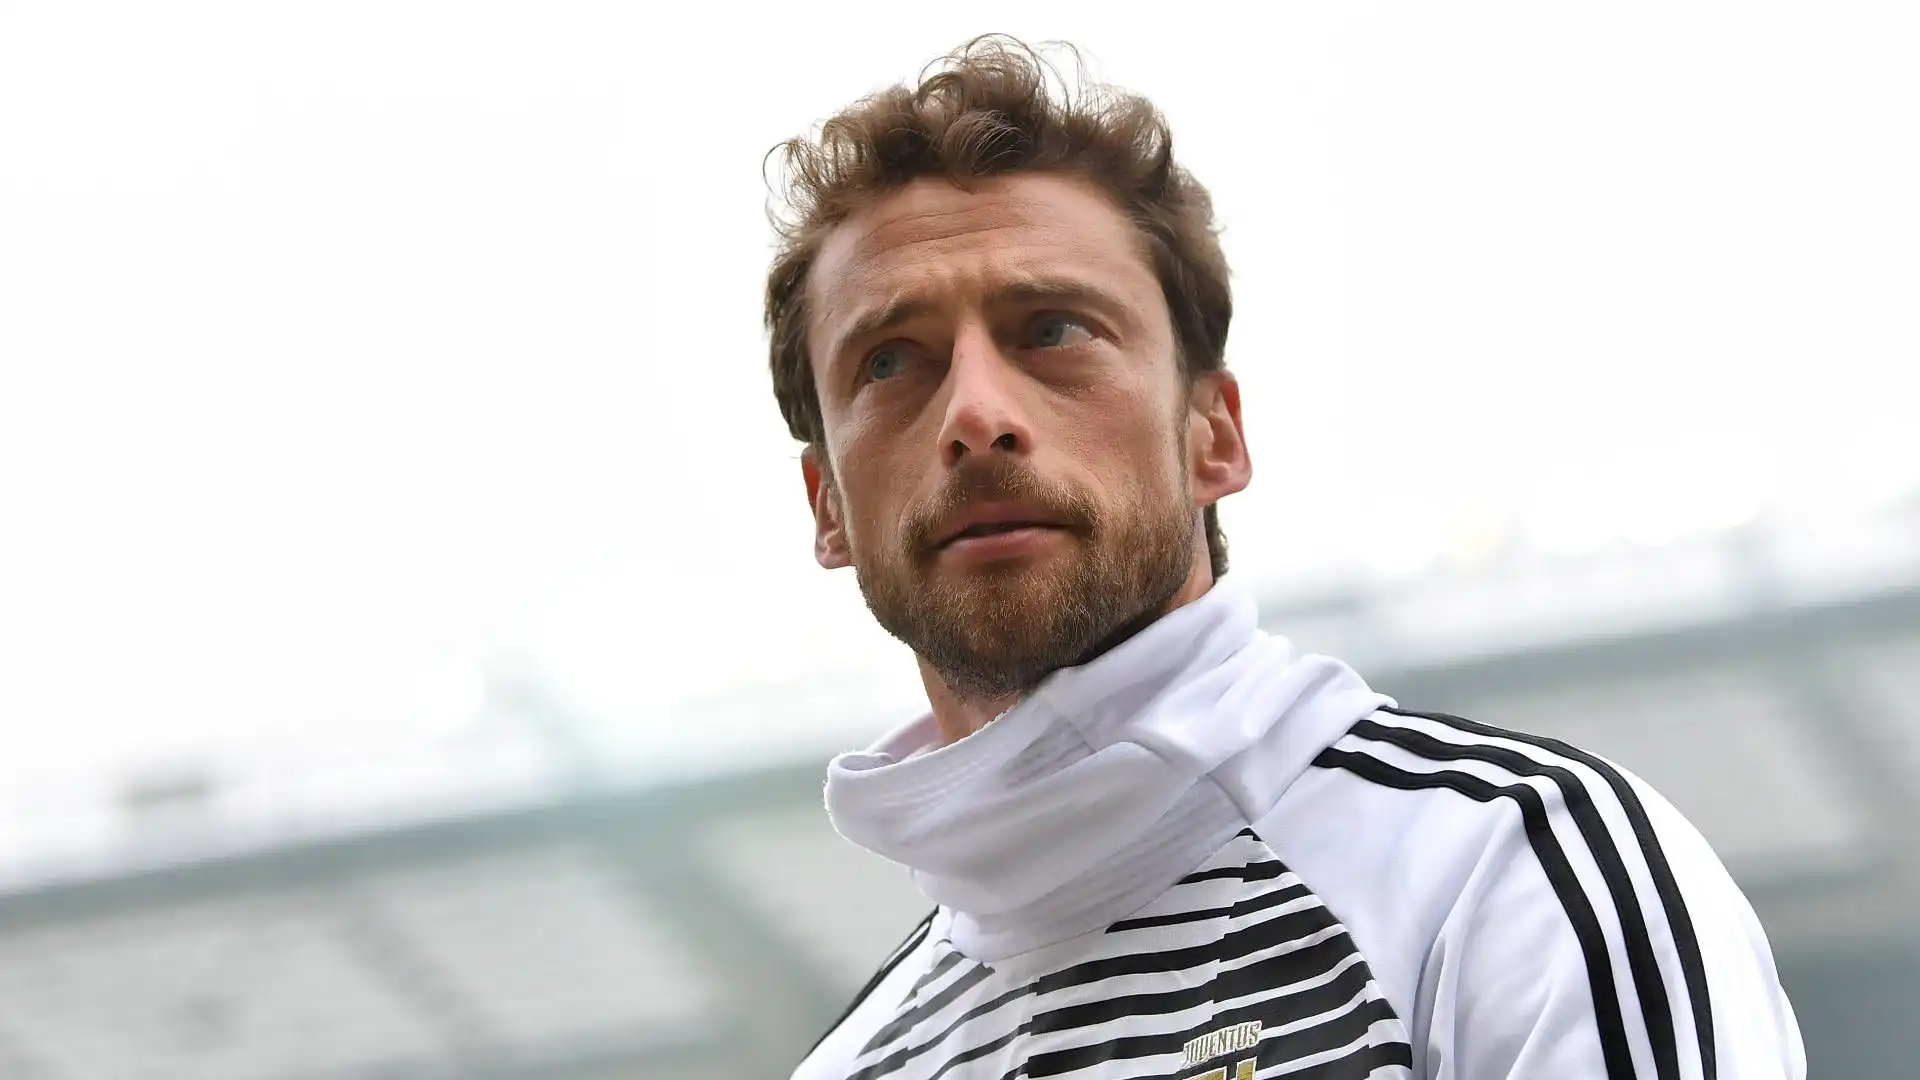 Marchisio ha concluso la carriera allo Zenit San Pietroburgo nel 2019